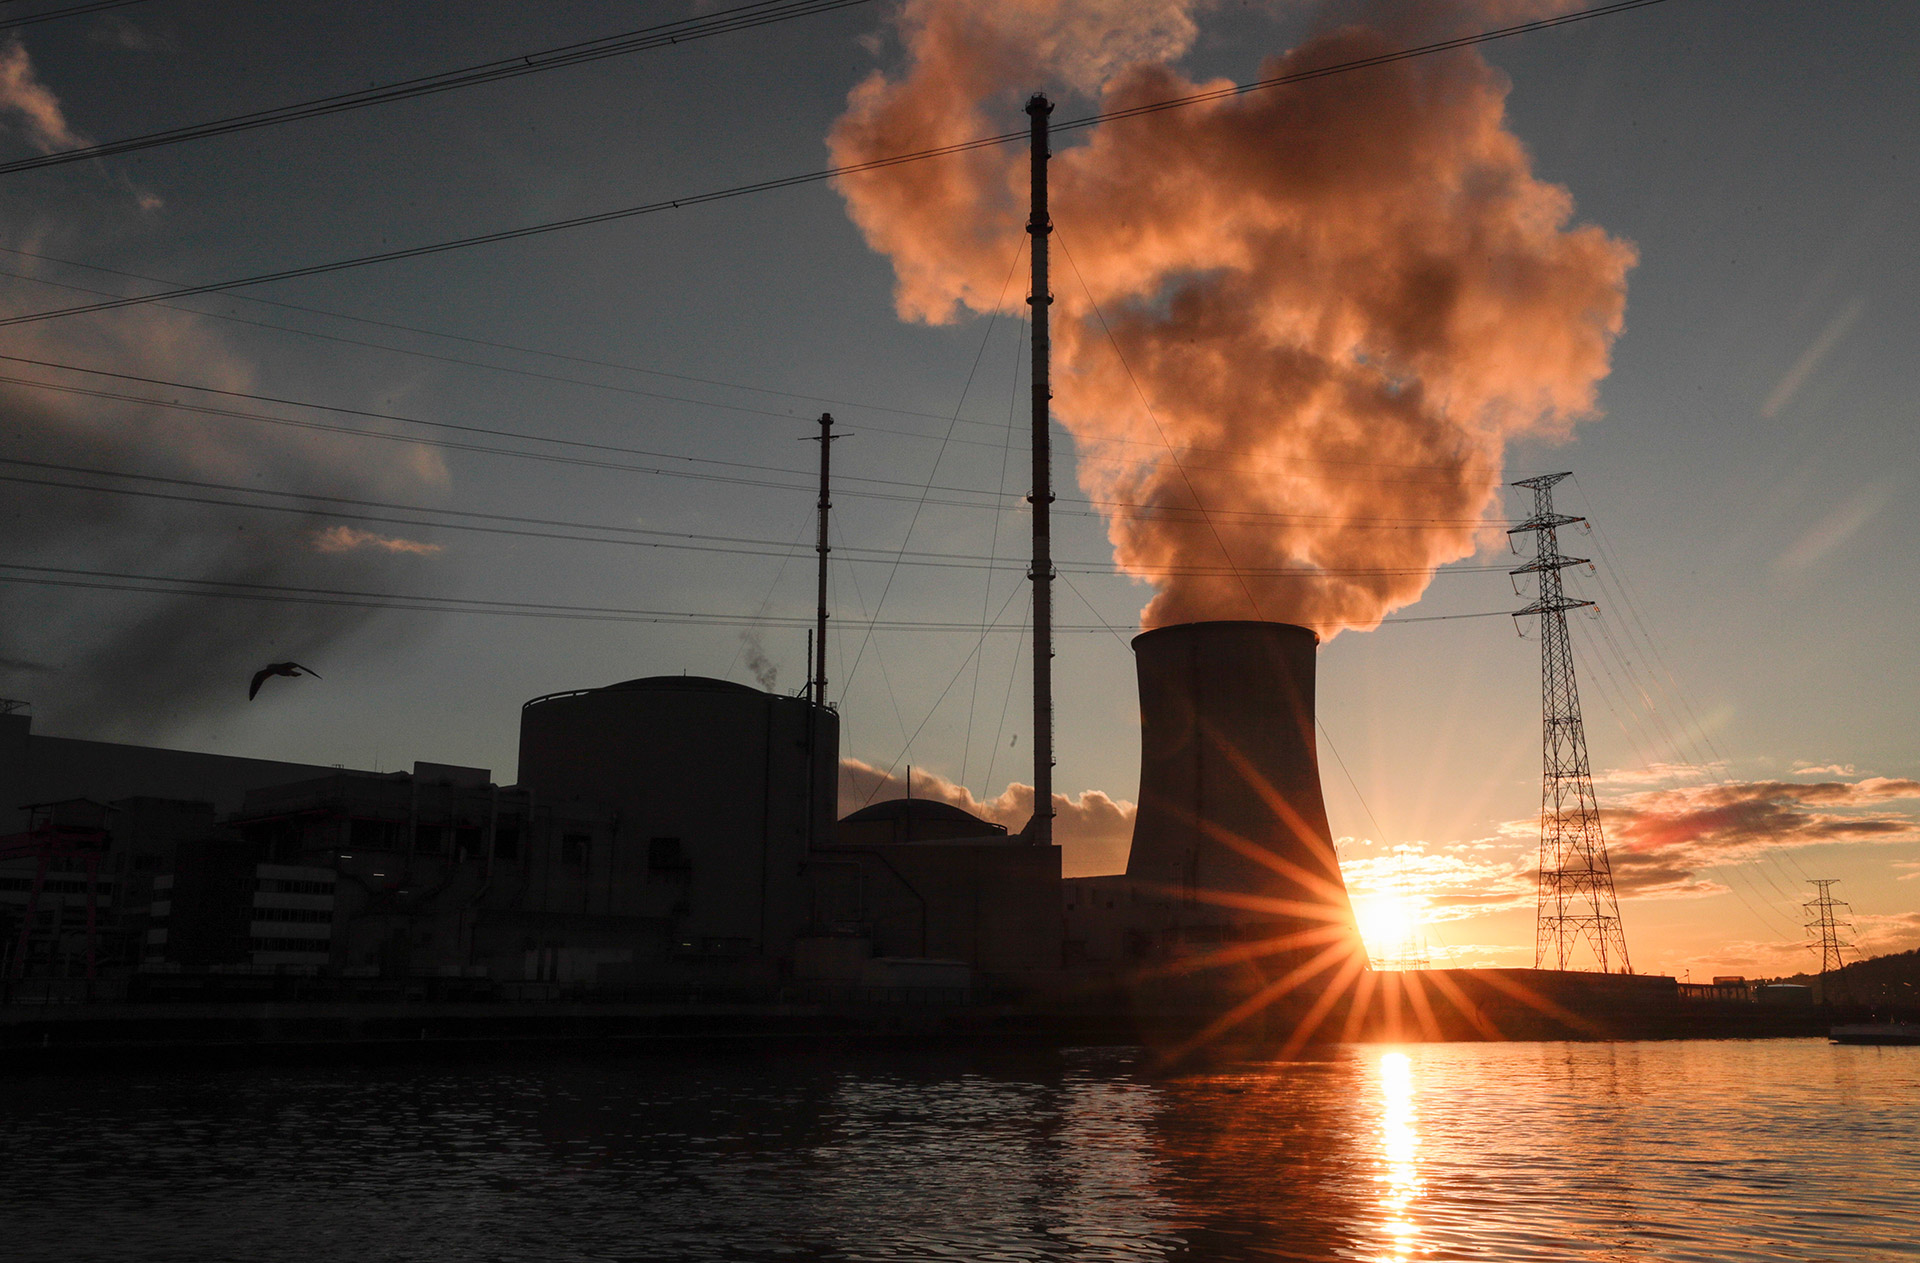 Para Ruocco, "la nuclear es la energía que menos CO2 emite a la atmósfera, por lo tanto, tiene toda la lógica, desde el punto de vista científico y medioambiental, que la Comisión Europea la considere verde en su taxonomía energética". (EFE)